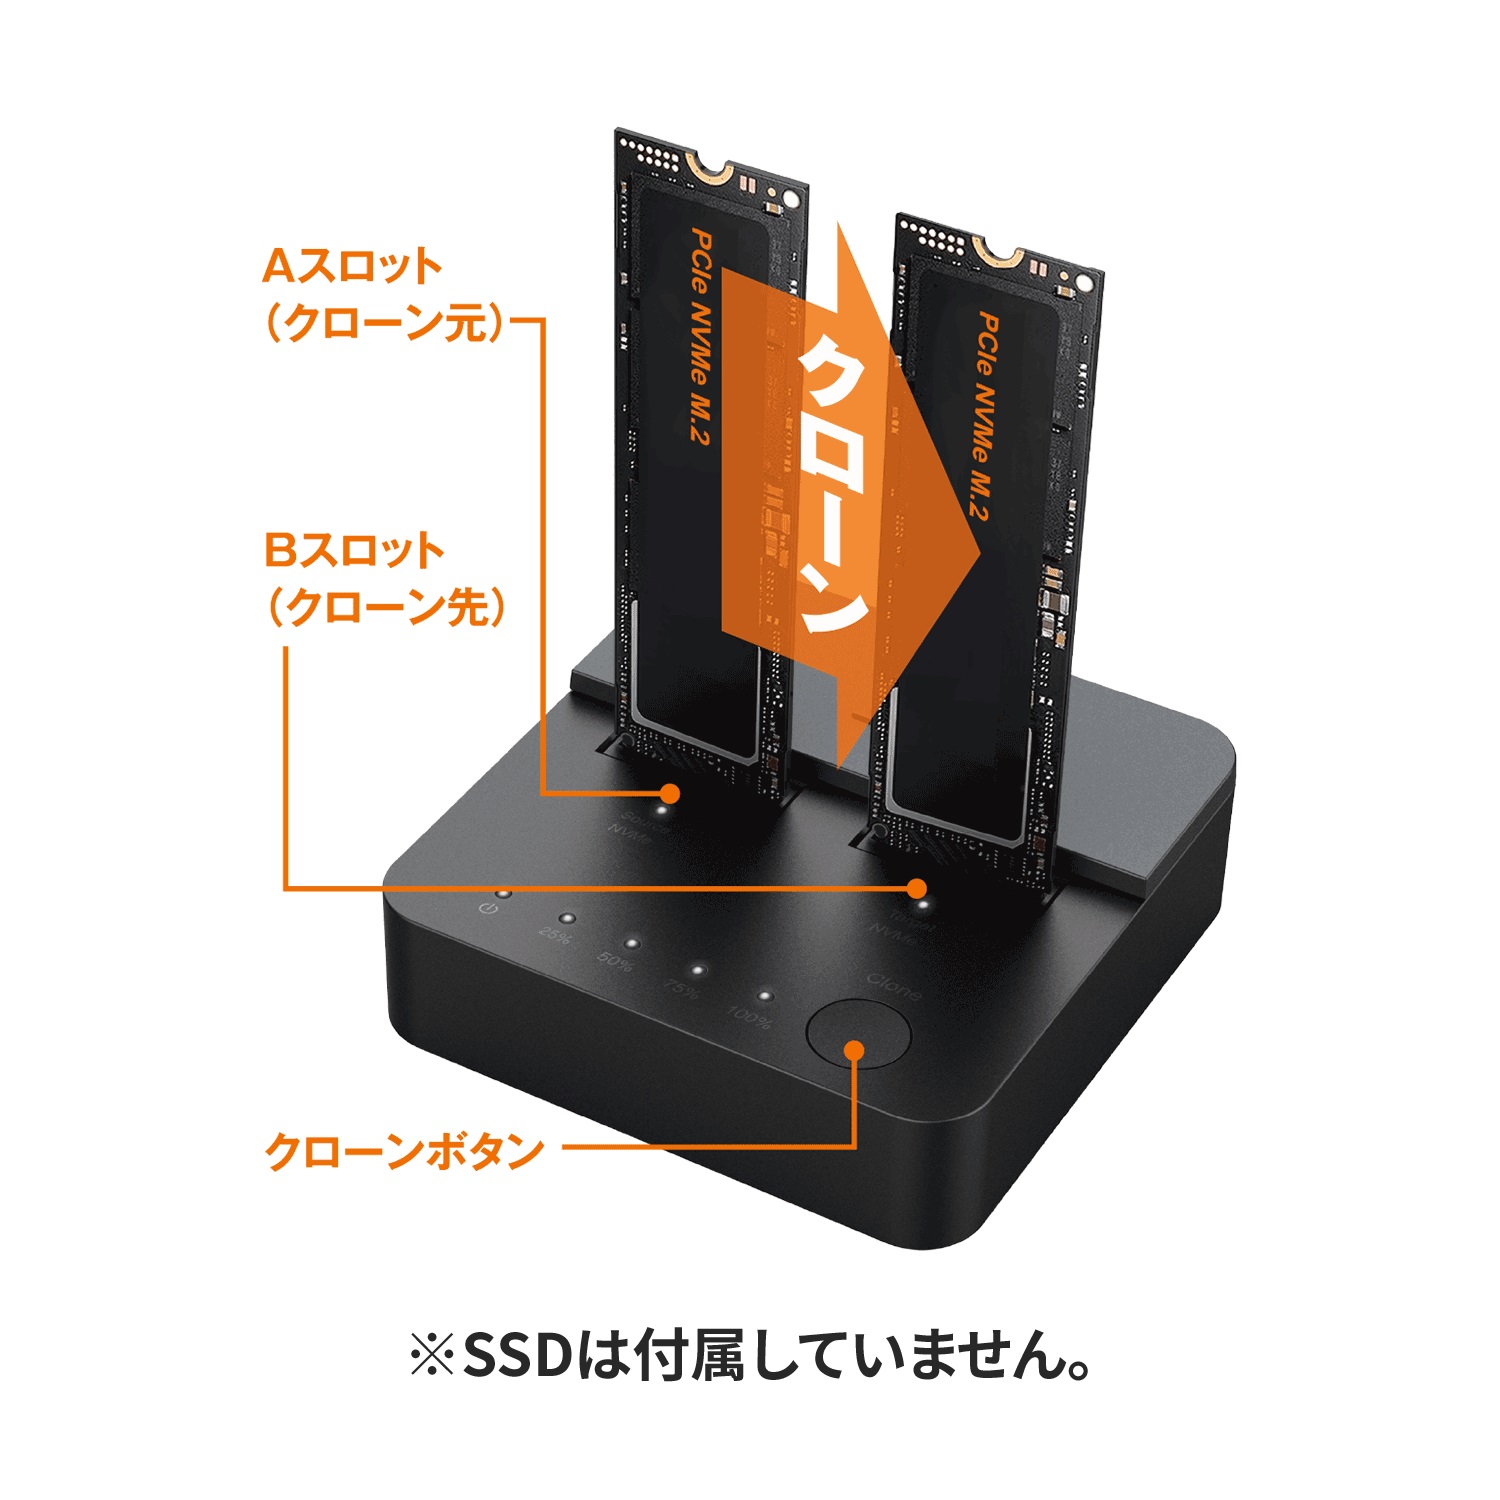 玄人志向 KURO-DACHI/CLONE/NVMe [ USB3.2 Gen2x2接続 M.2 NVMe SSD スタンド クローン機能対応 メーカー保証1年 ]